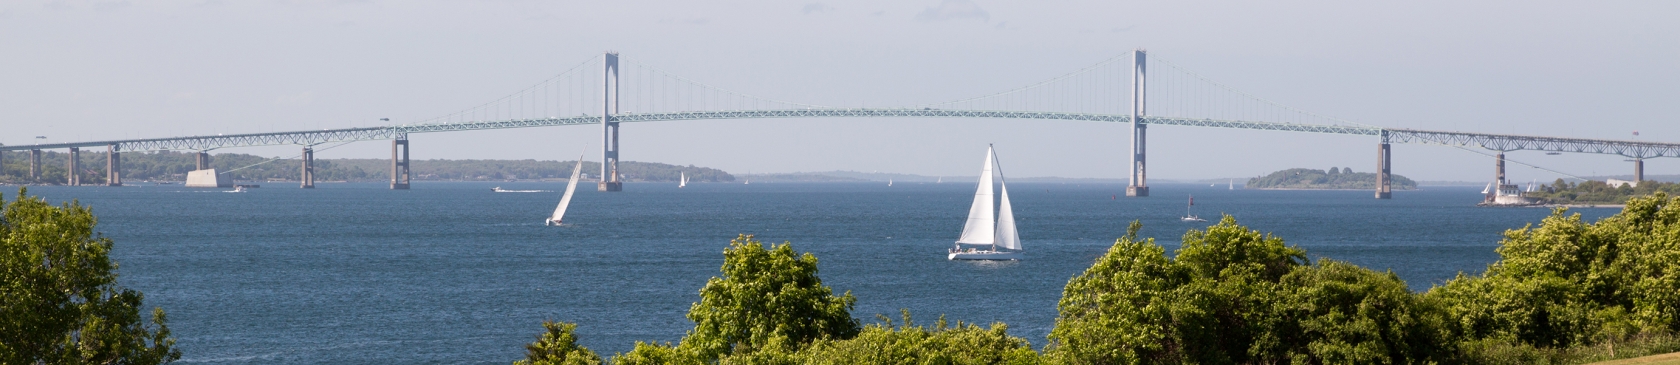 Newport RI Bridge sailing